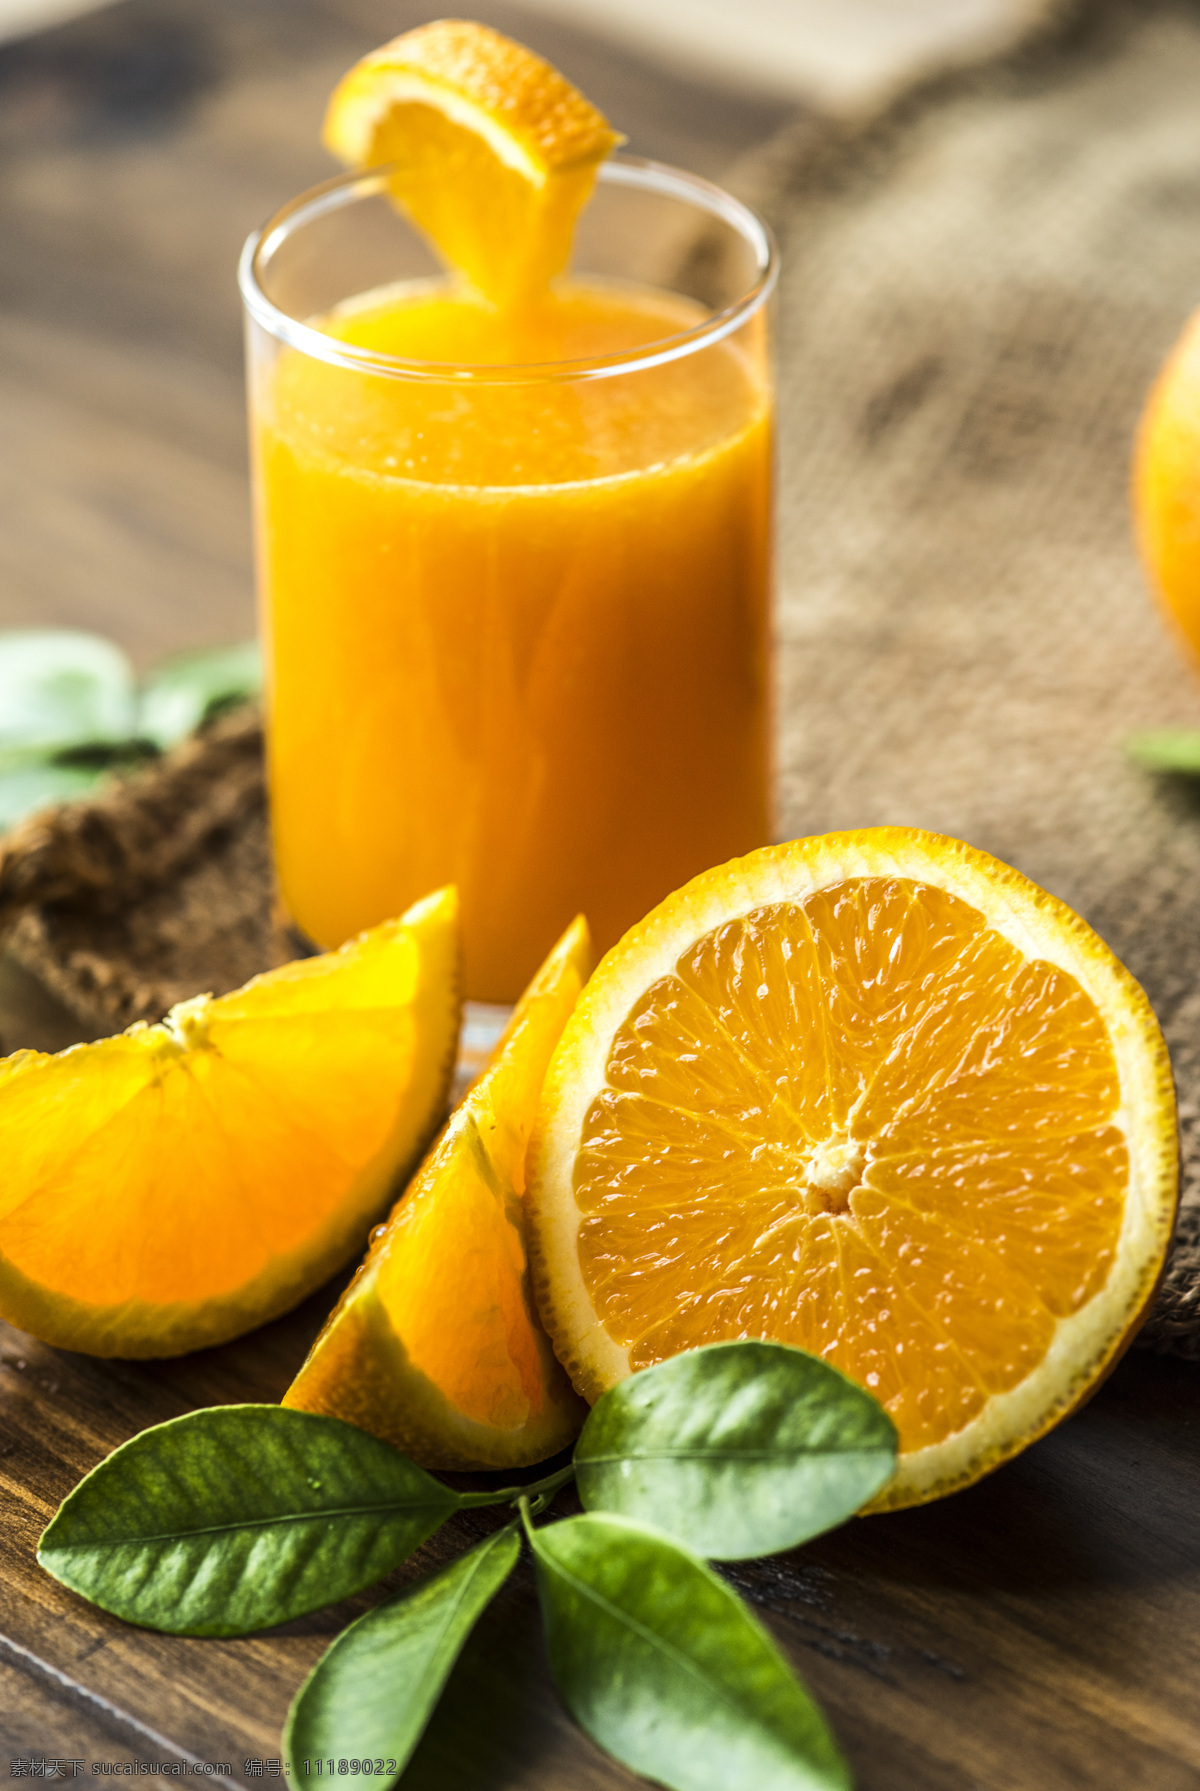 鲜榨橙子汁 美味 饮品 果汁 水果 橙子 鲜榨 新鲜 餐饮美食 饮料酒水